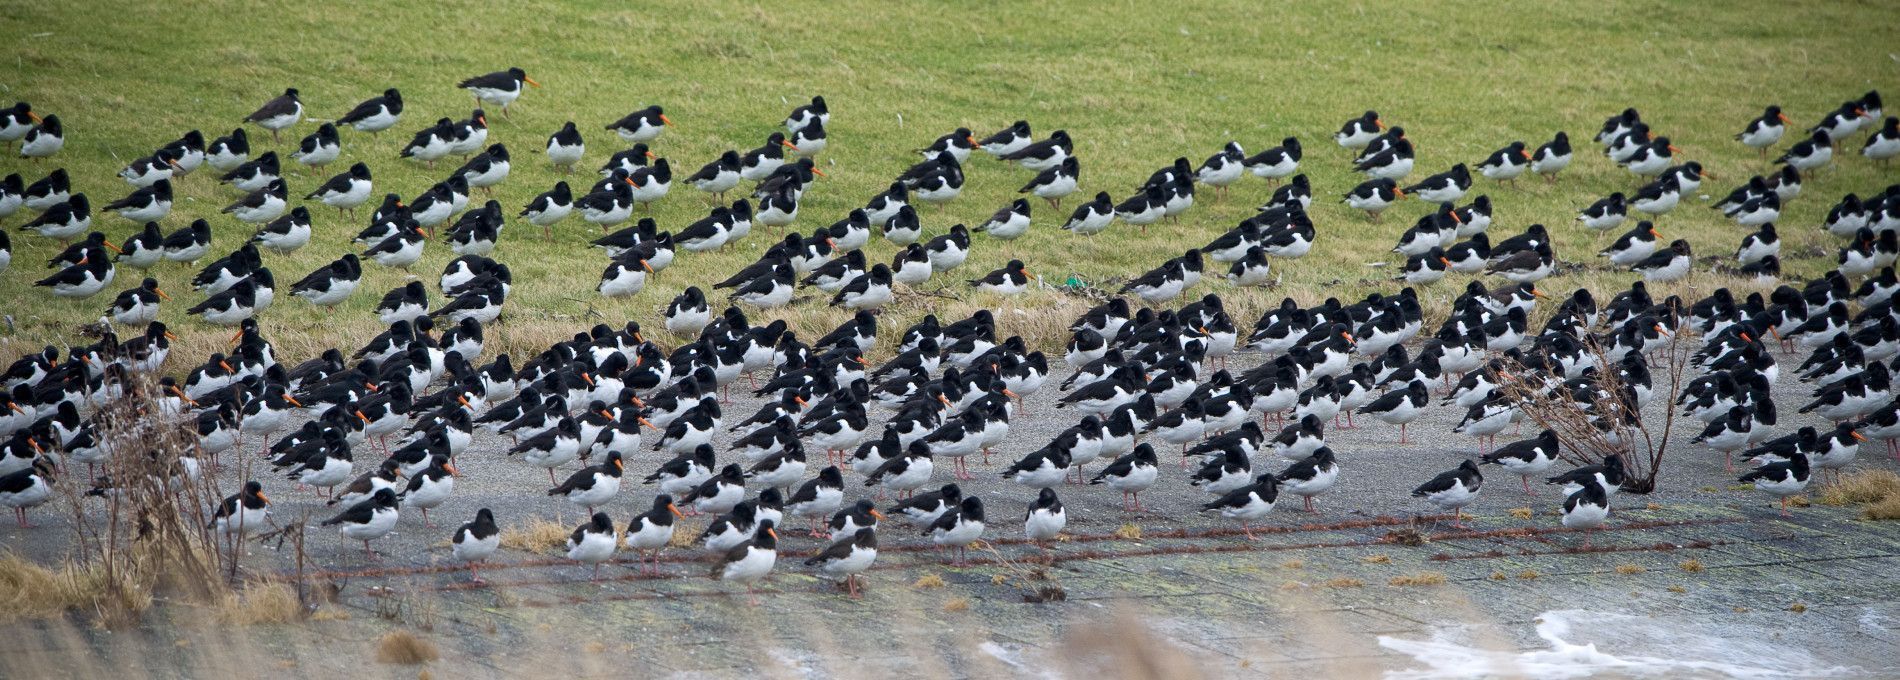 Vogels op Ameland - VVV Ameland